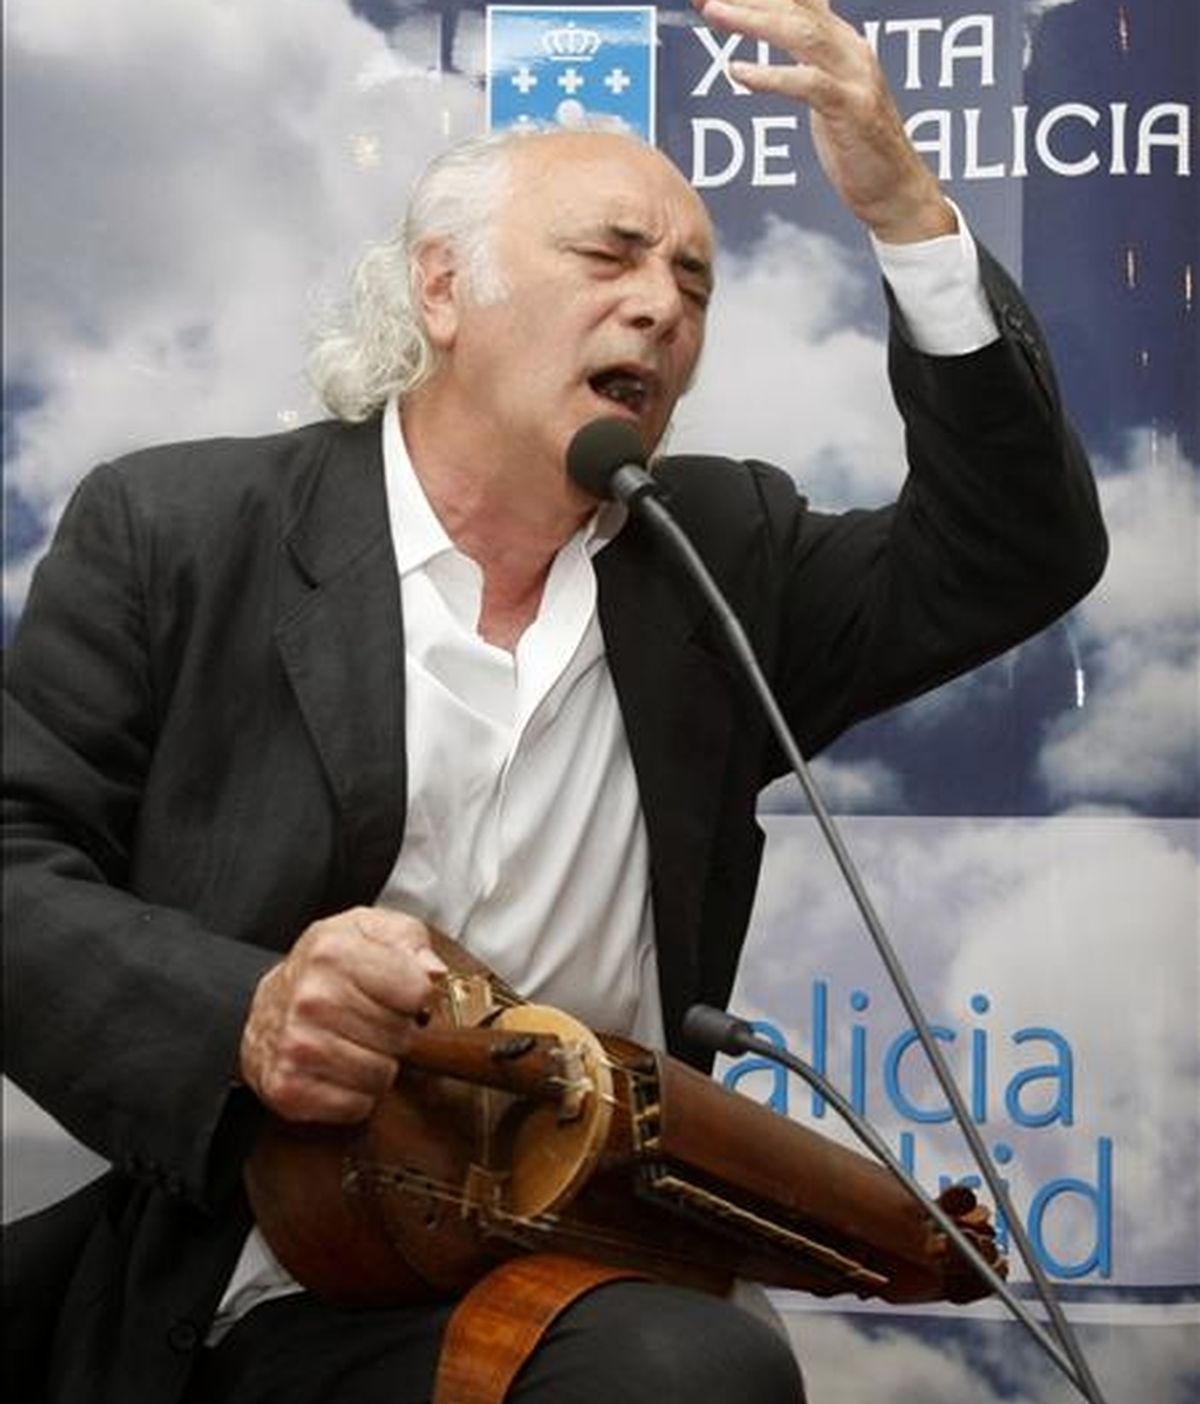 El cantautor Amancio Prada, durante una actuación. EFE/Archivo